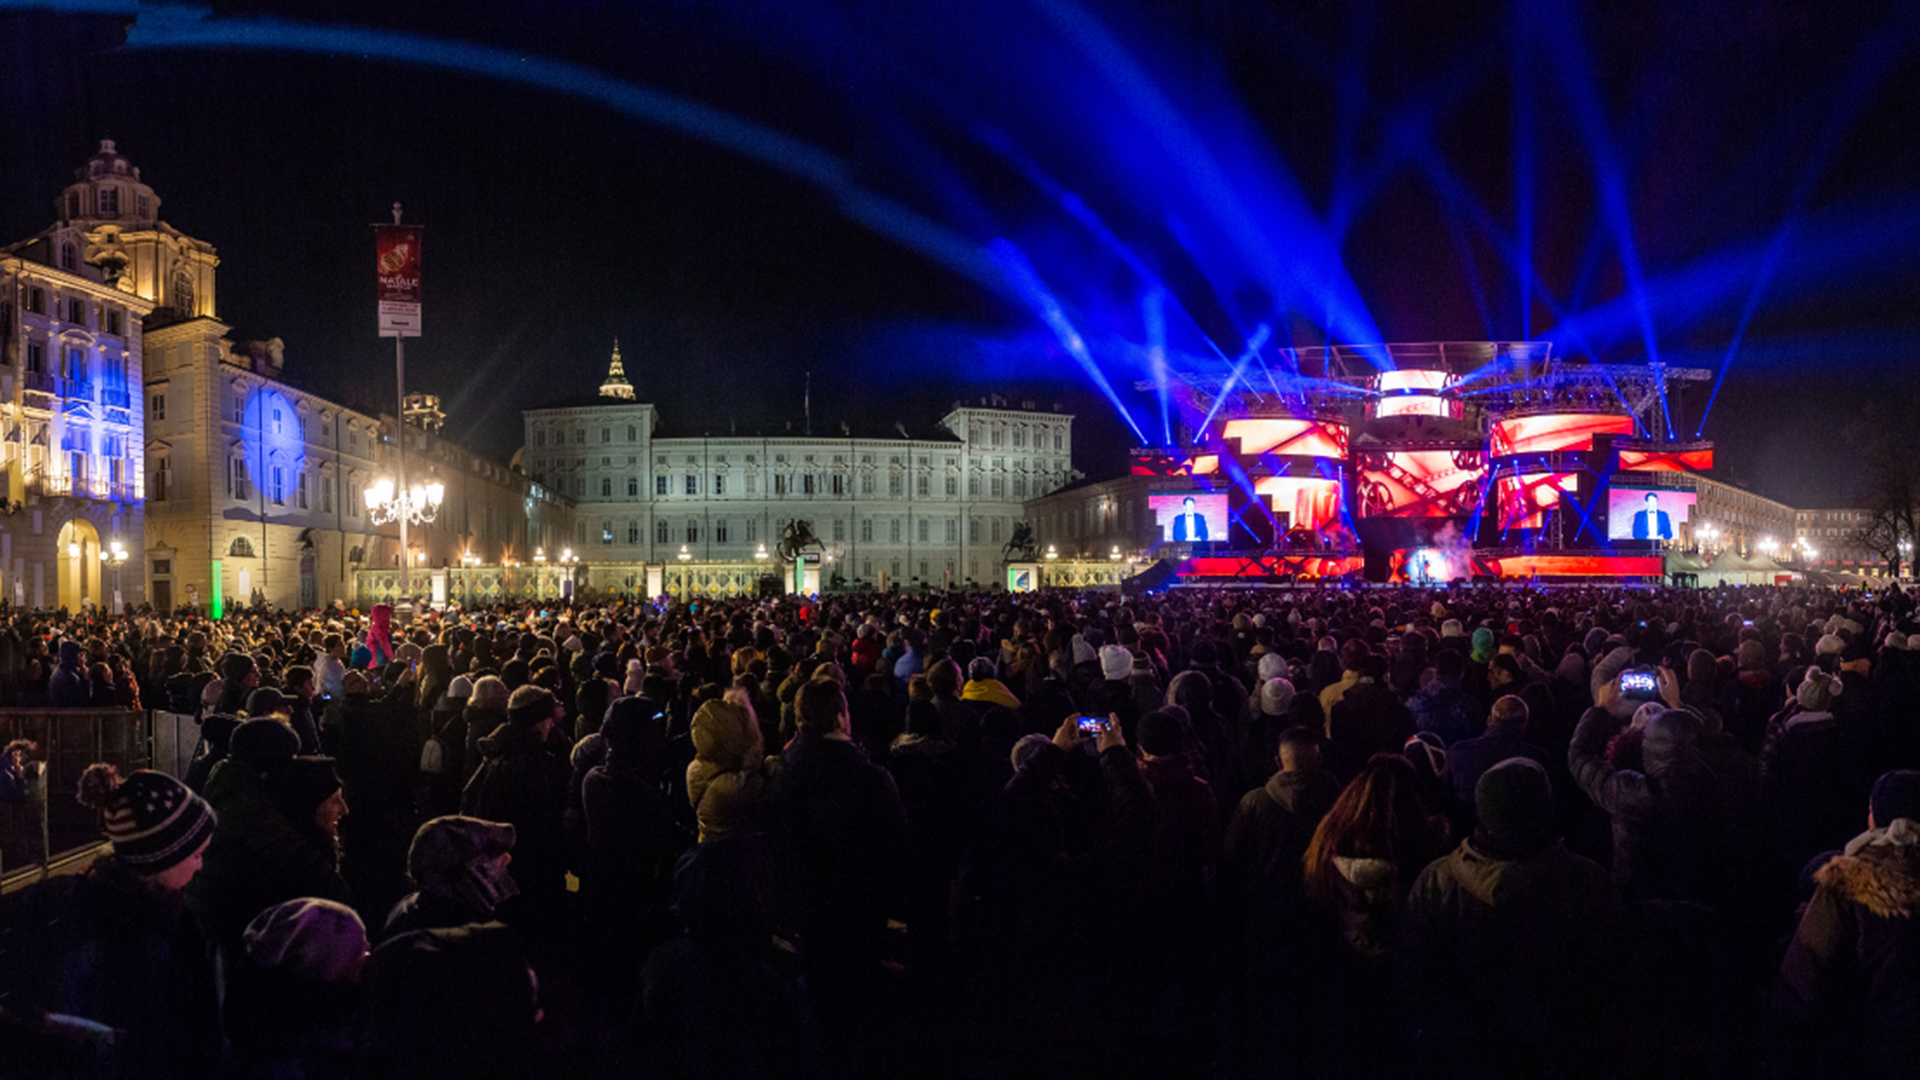 Veduta notturna di piazza Castello a Torino illuminata dallo spettacolo per i giochi mondiali universitari